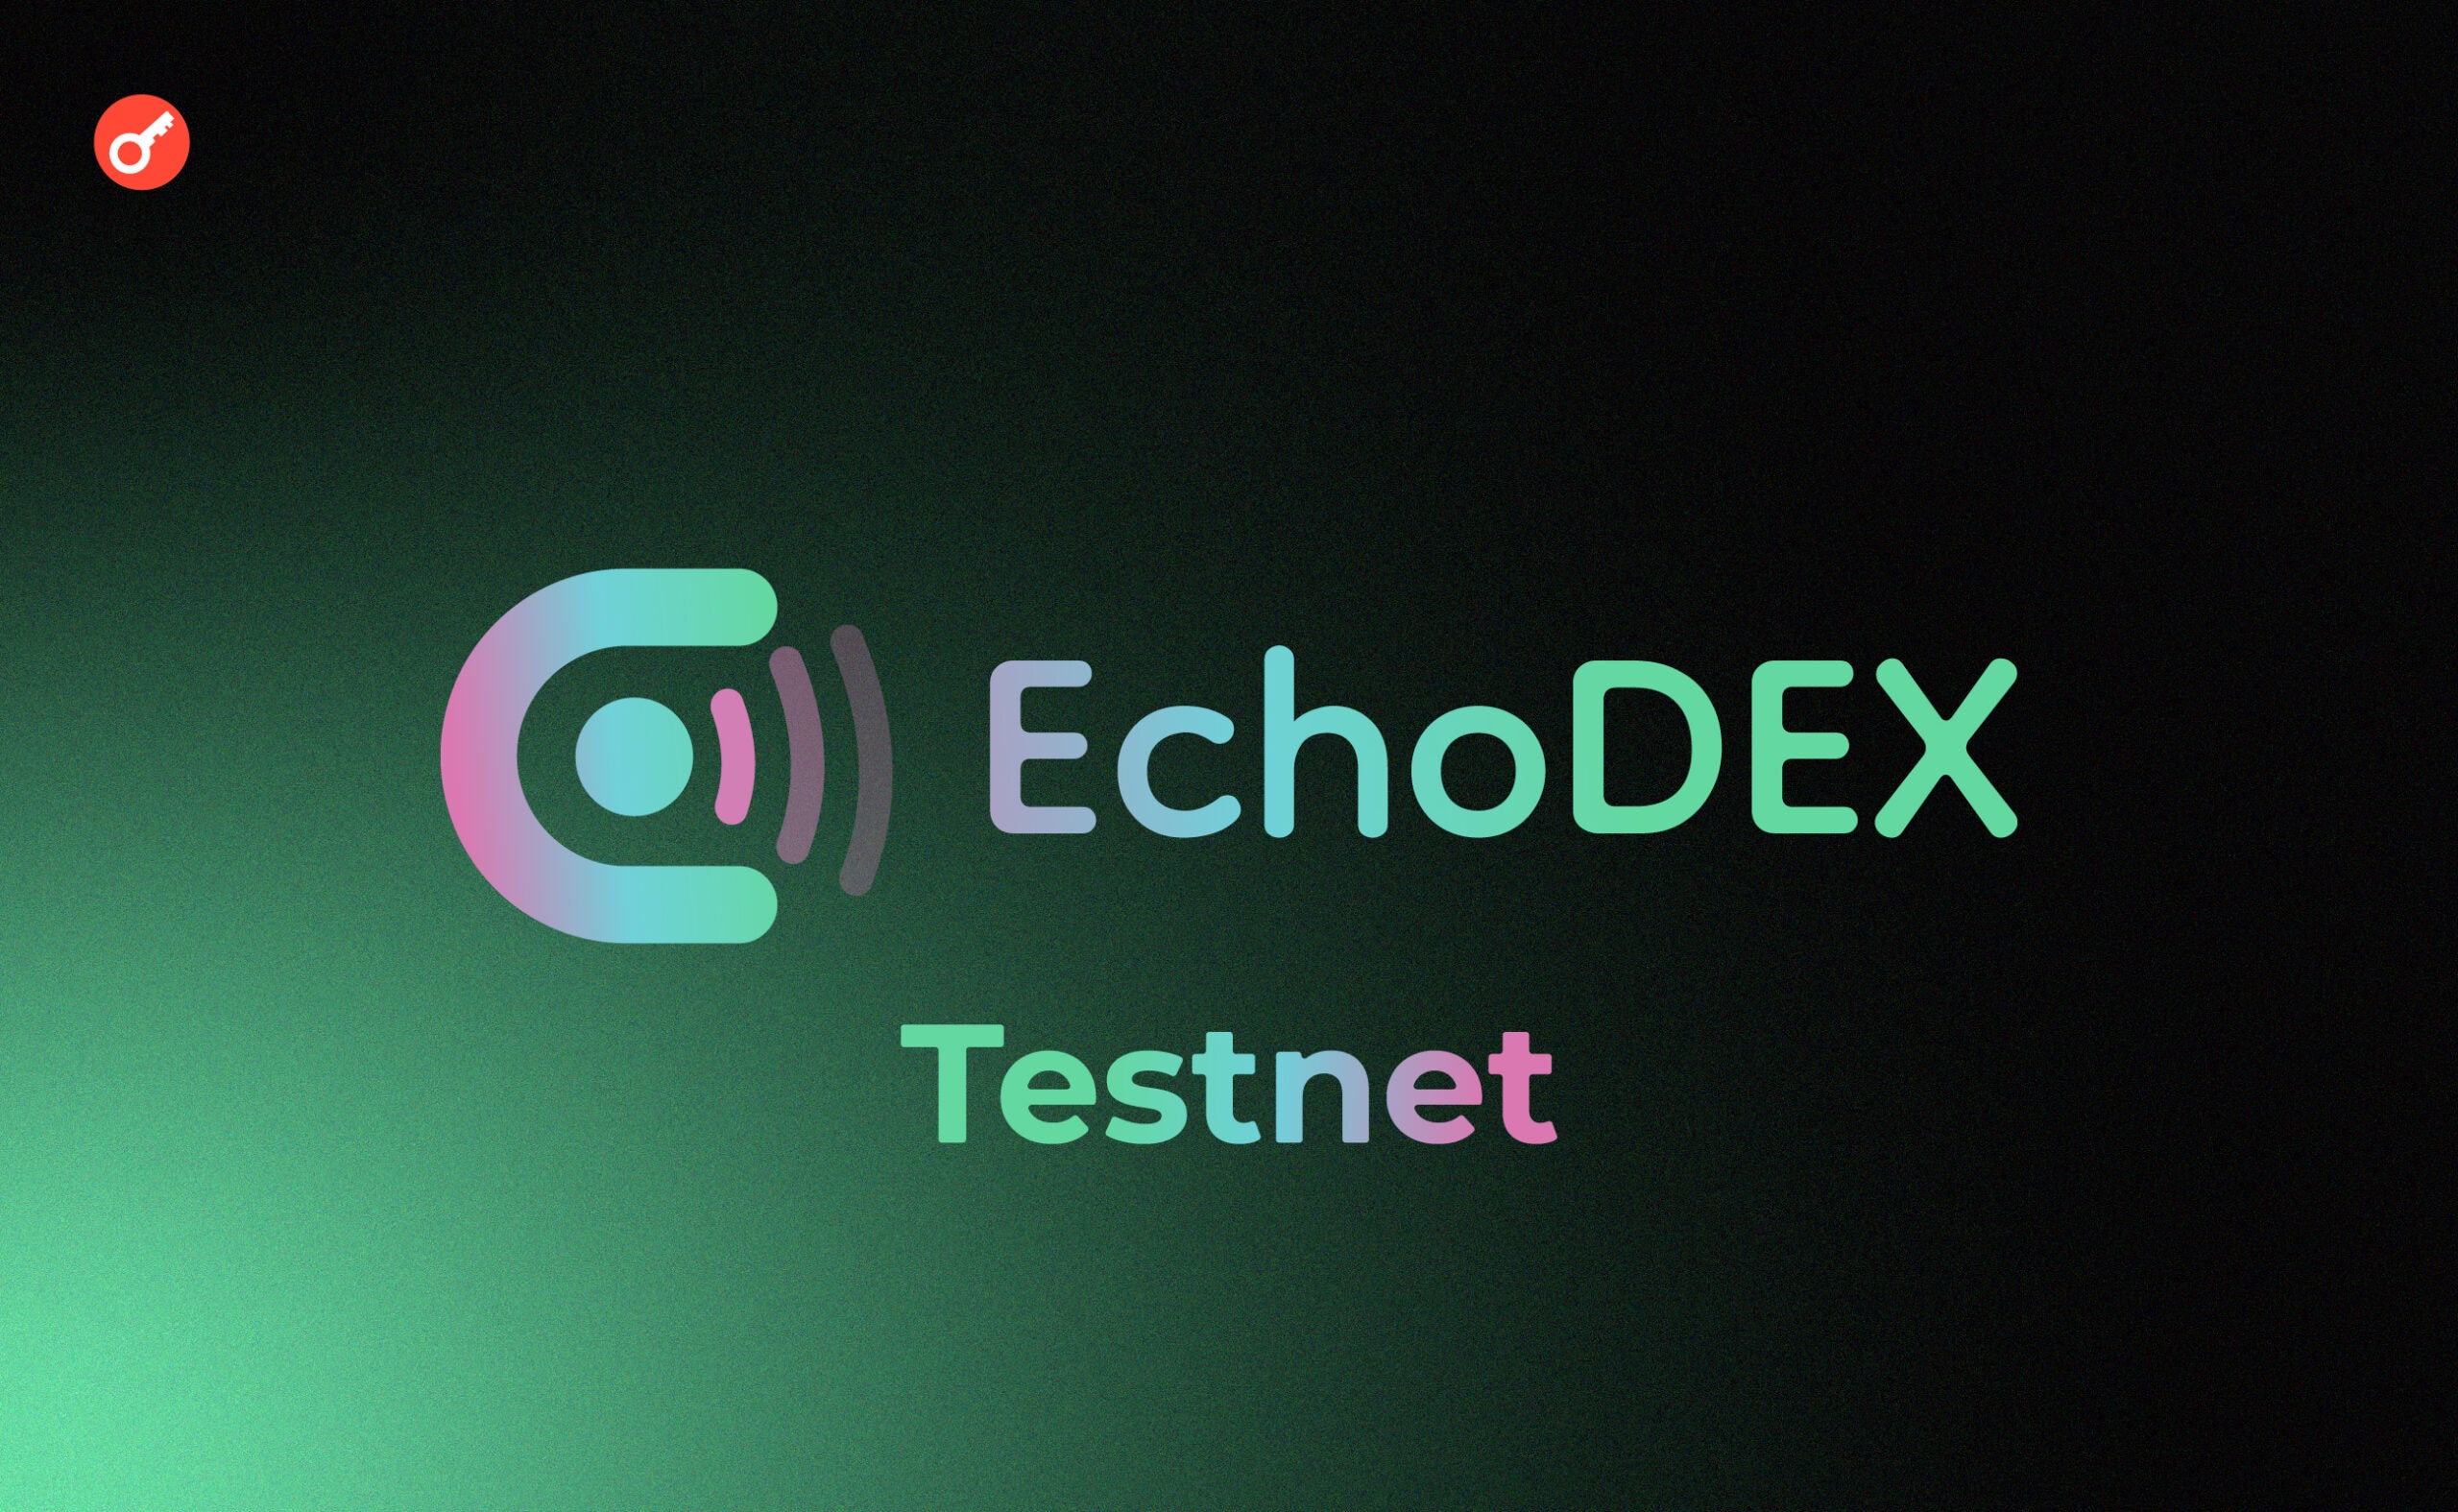 EchoDex тестнет: инструкция по прохождению активностей. Заглавный коллаж статьи.